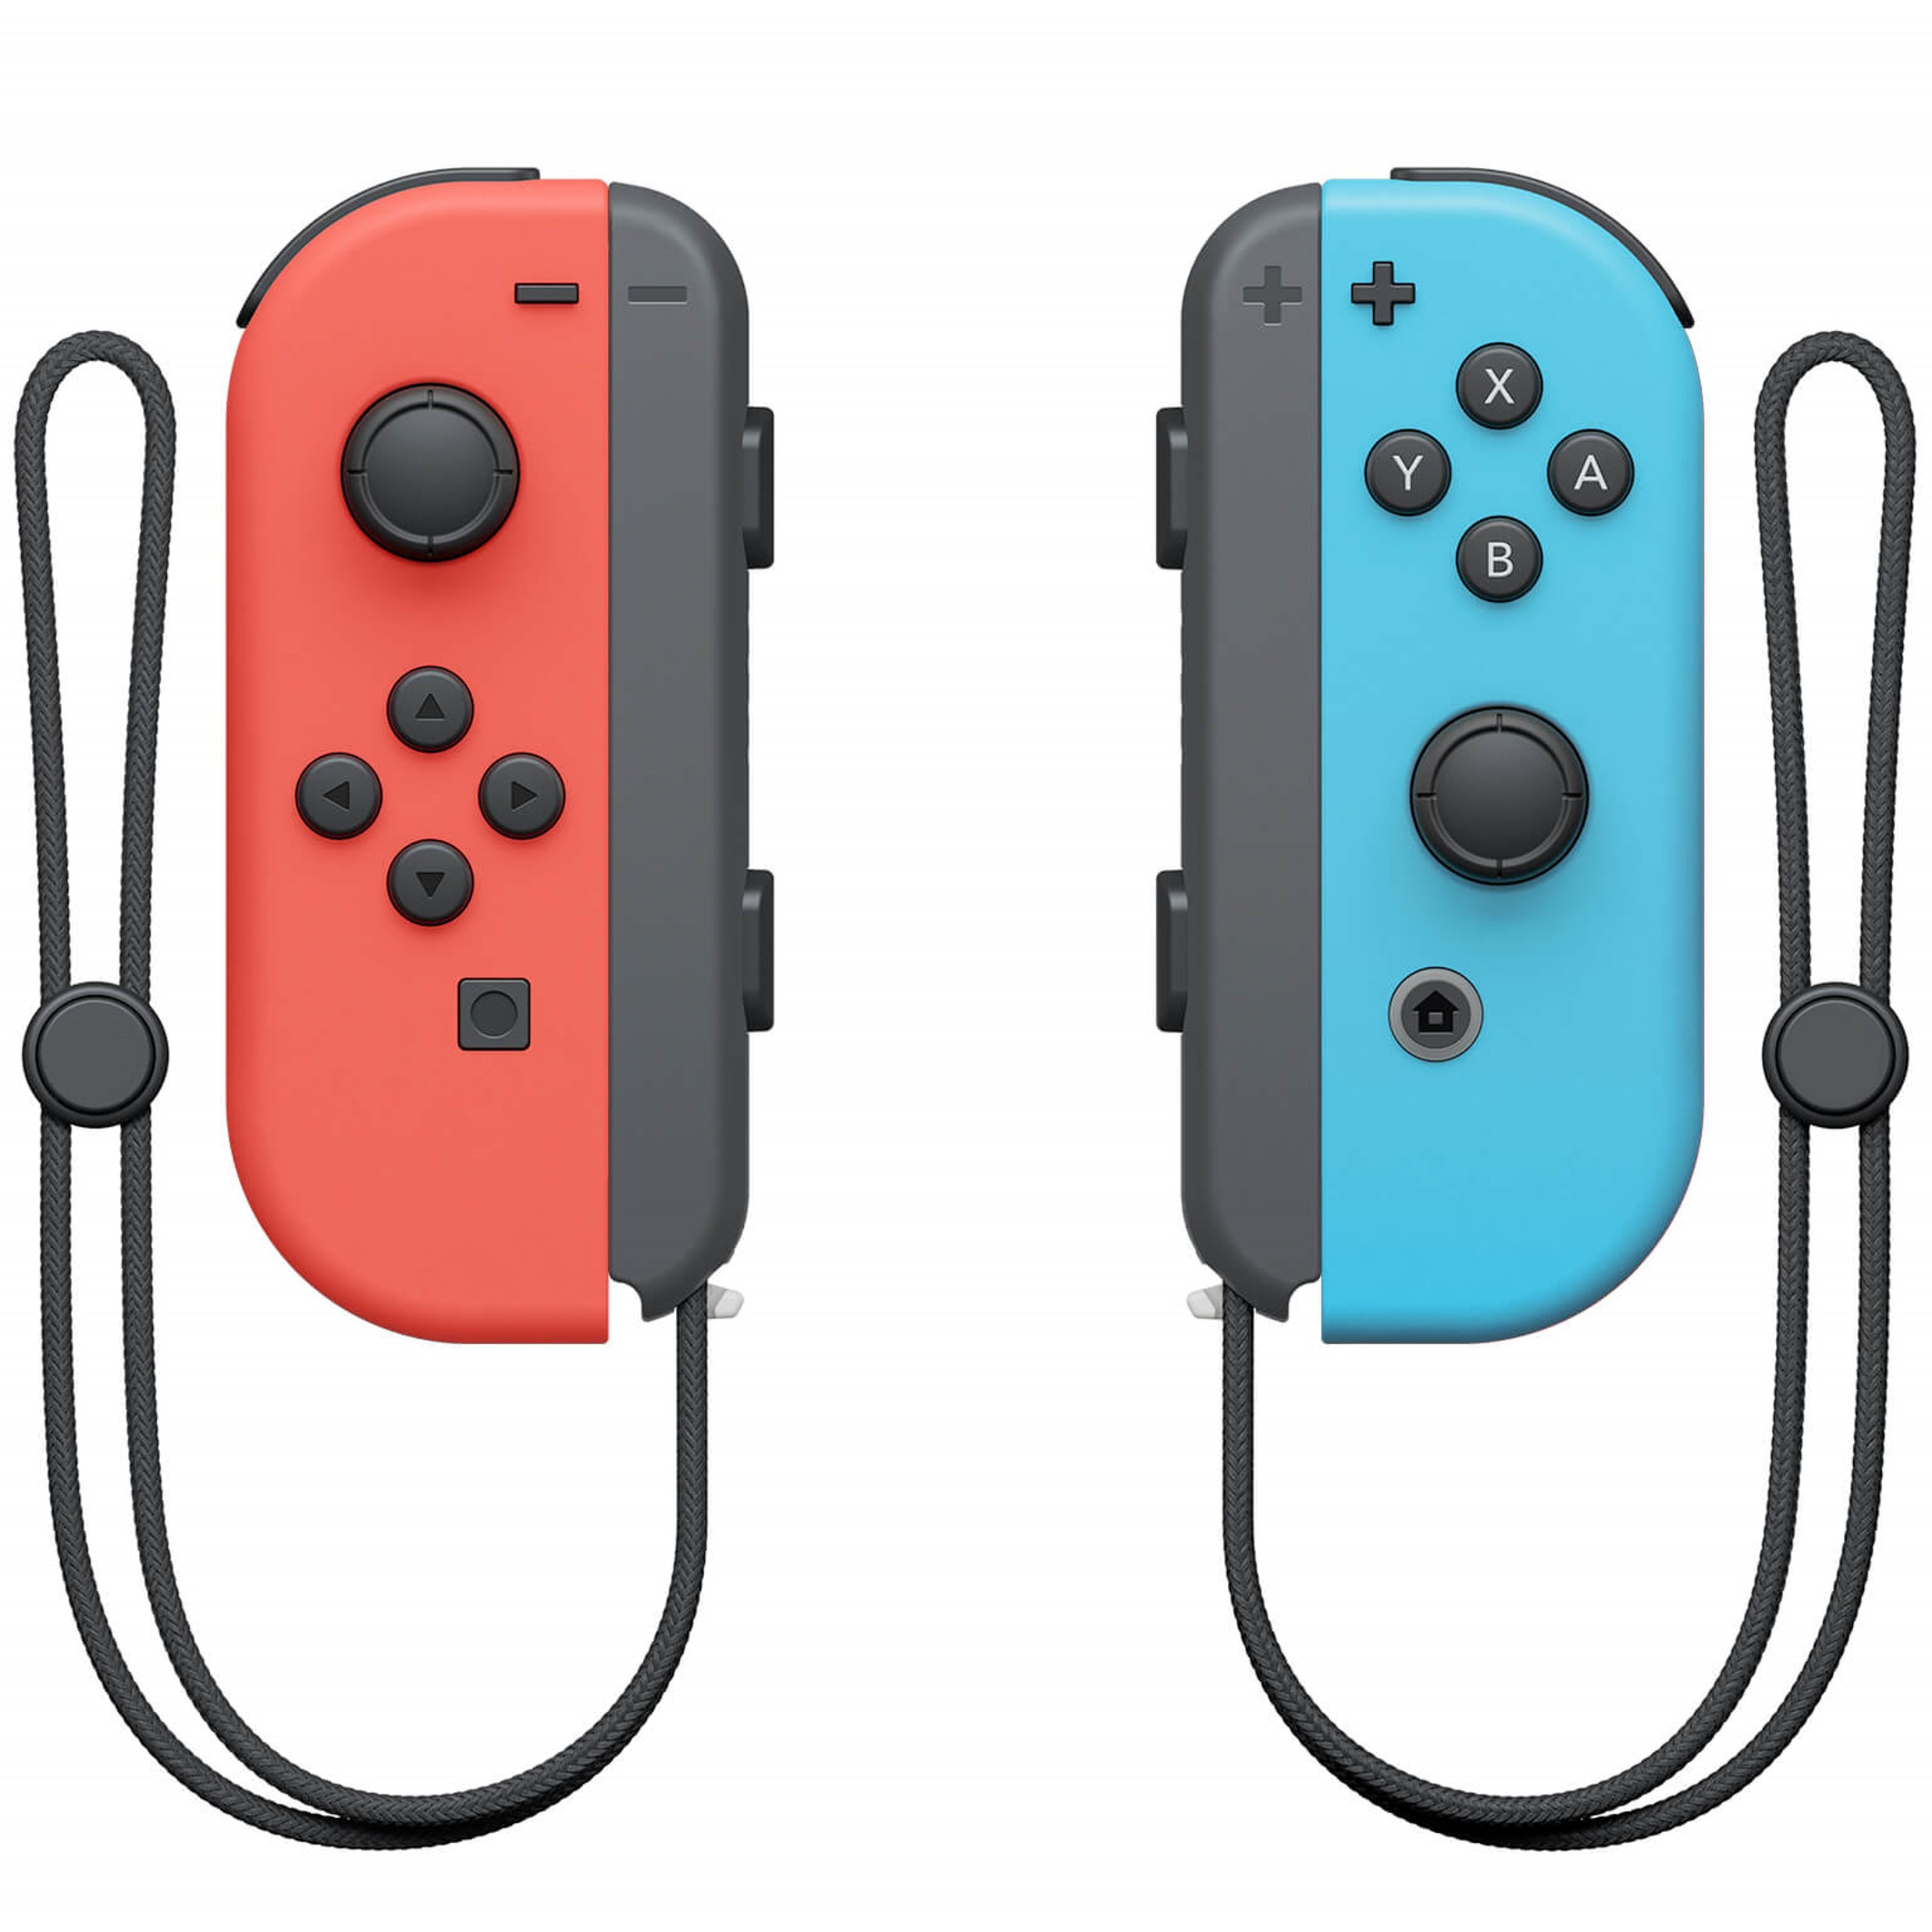 Nieuwe Wireless Joy-Con Controllers (L & R) voor de Nintendo Switch - Blauw/Rood Kopen | Nintendo Switch Hardware